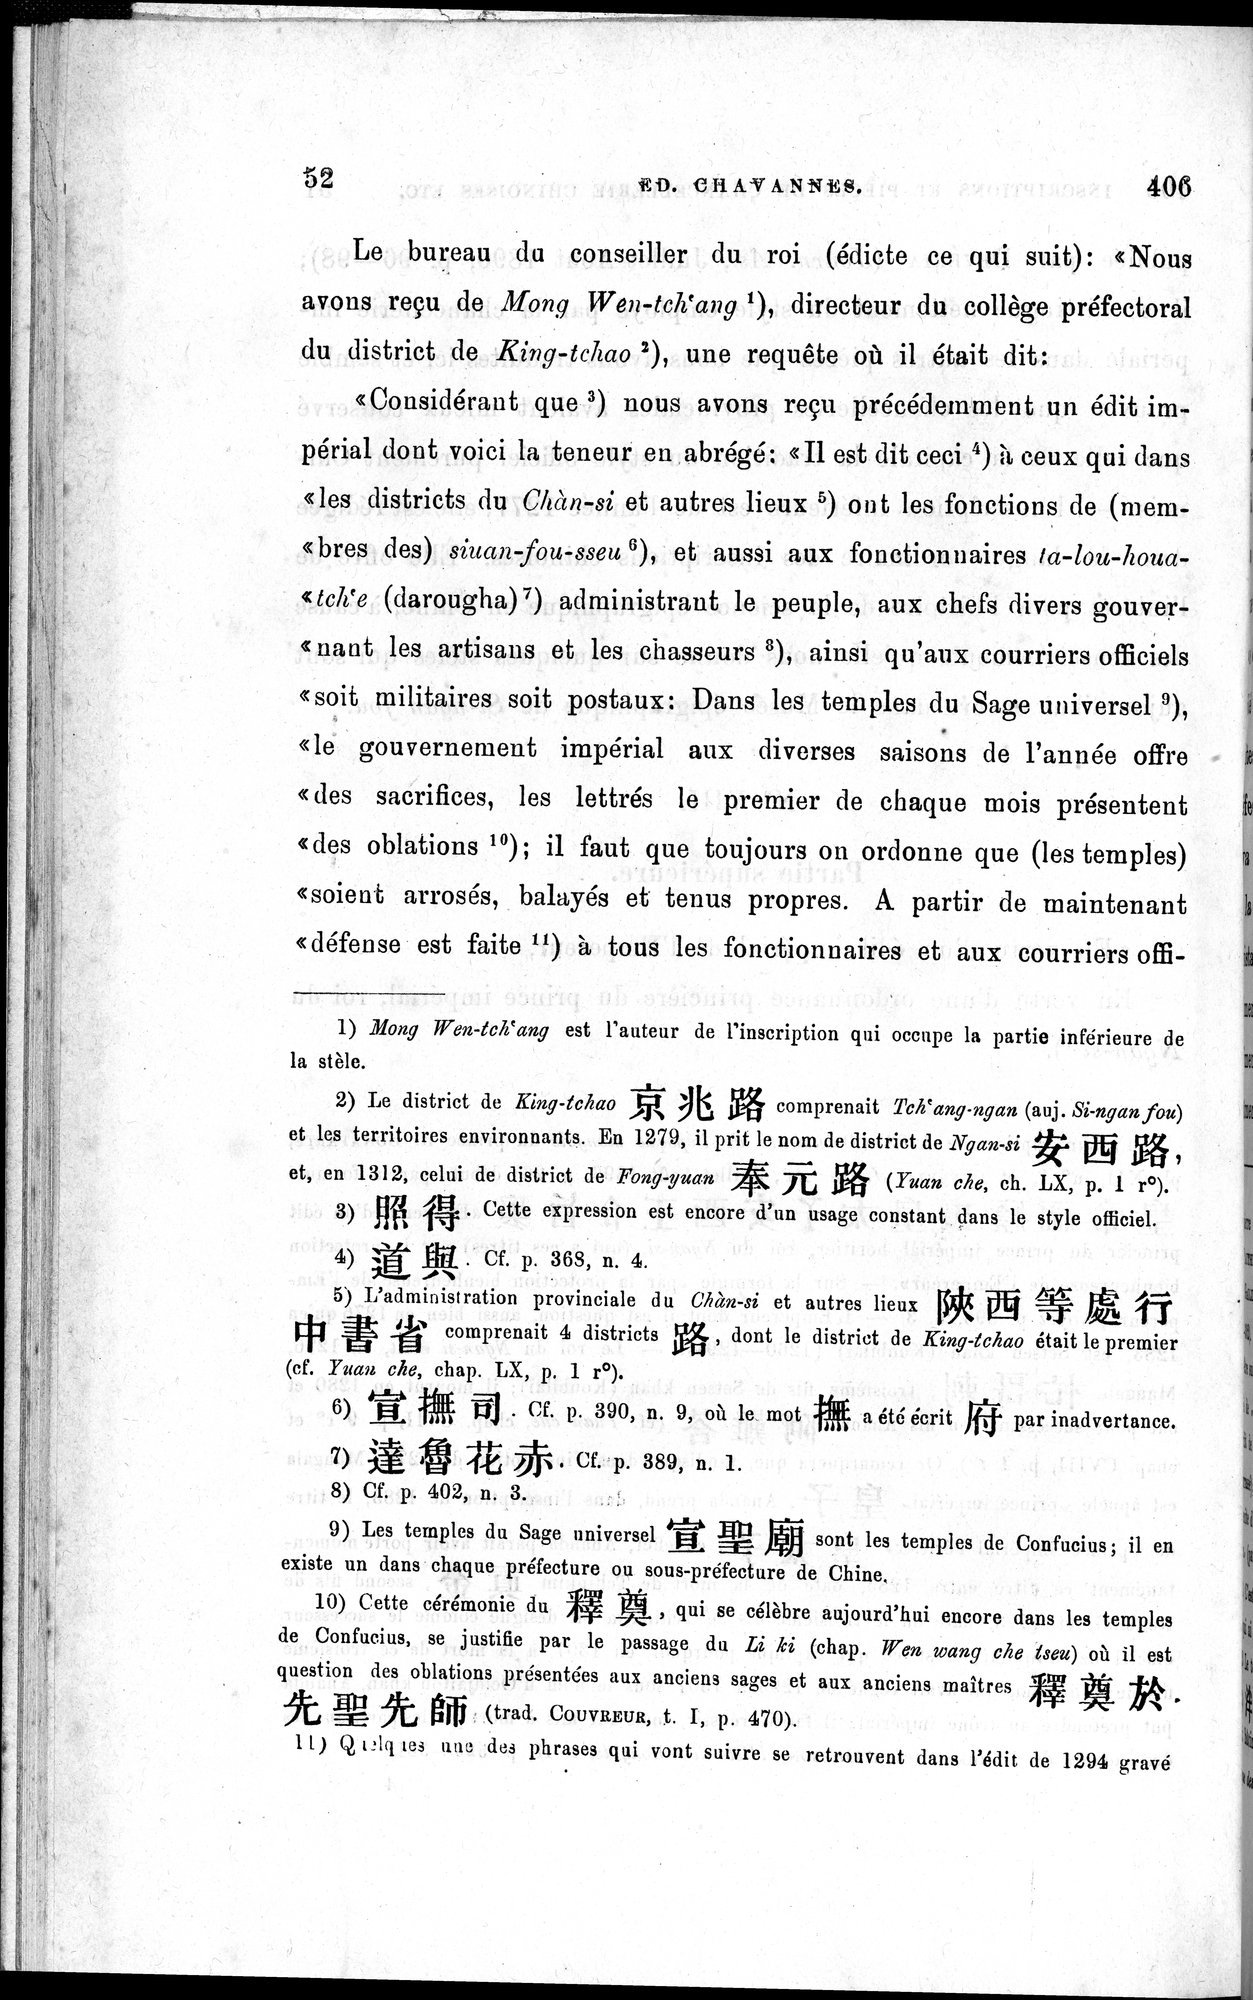 Inscriptions et pièces de Chancellerie Chinoises de l'époque mongol : vol.1 / Page 62 (Grayscale High Resolution Image)